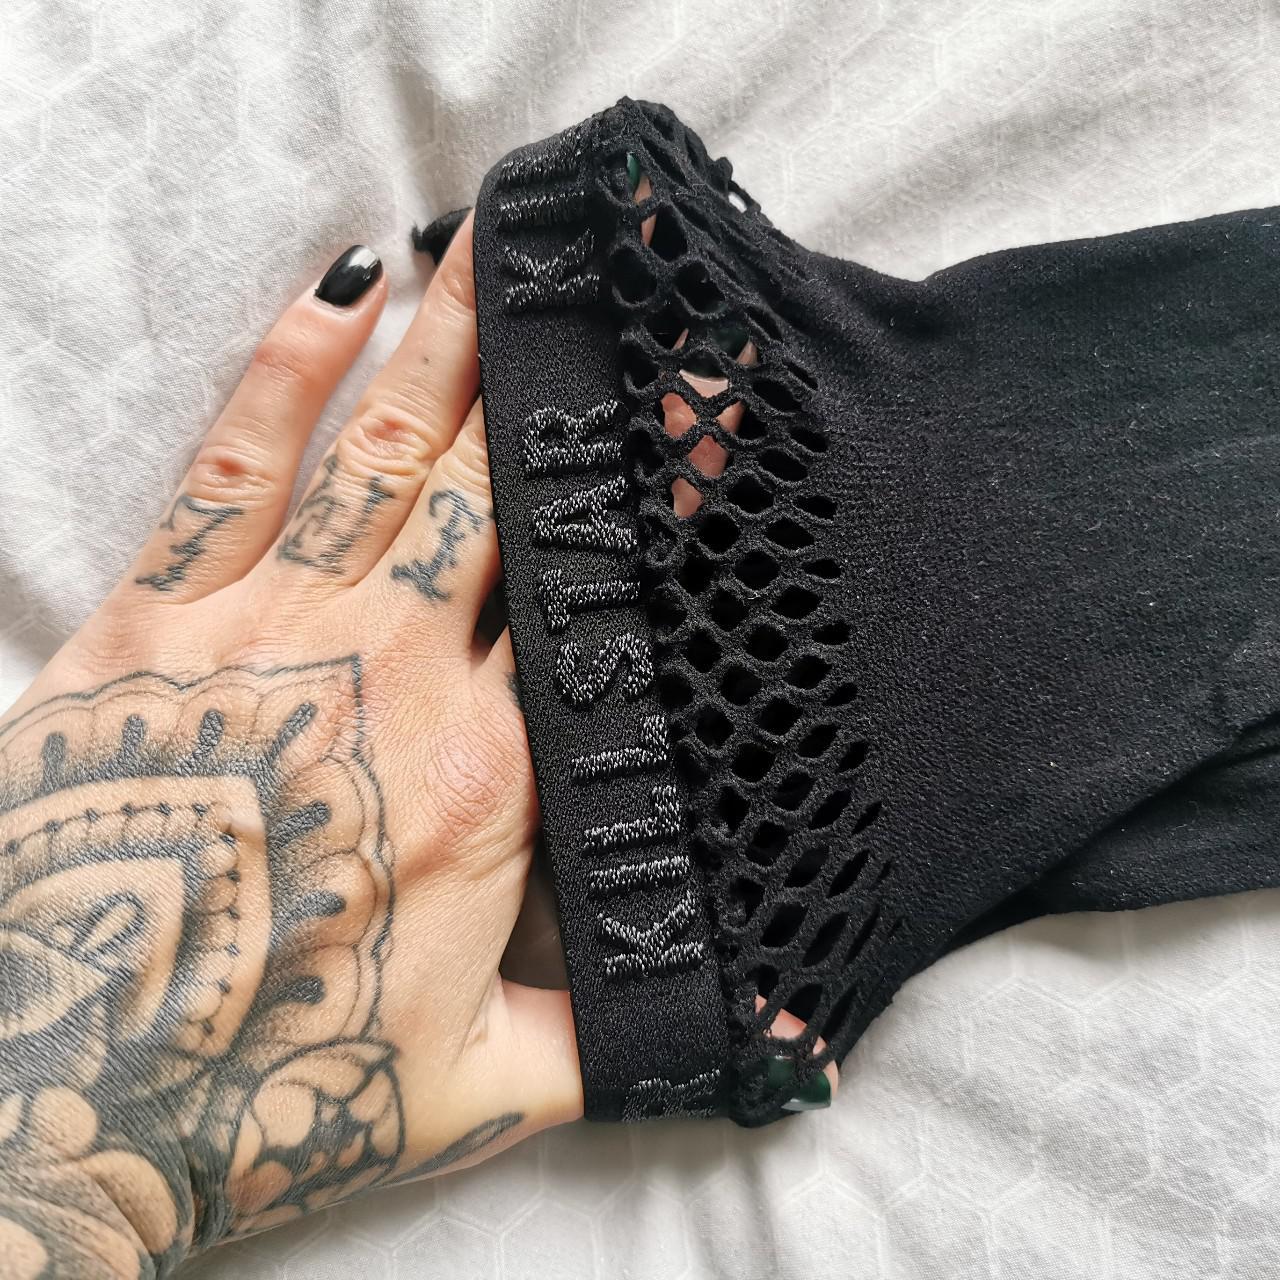 KILLSTAR Grave Girl leggings 🖤 Matte black cotton - Depop